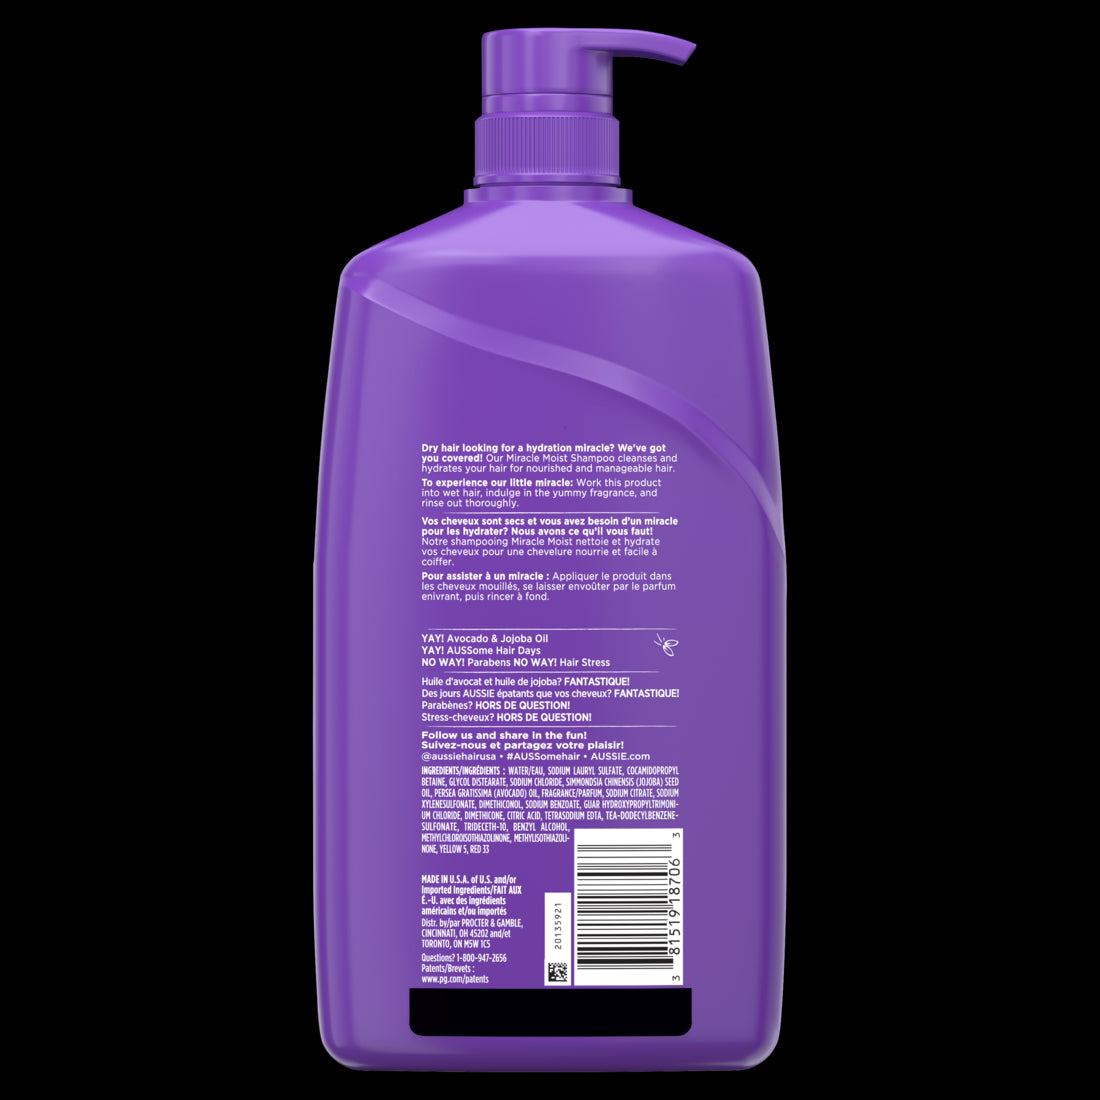 Aussie Paraben-Free Miracle Moist Shampoo Avocado & Jojoba Oil For Dry Hair - 30.4oz/4pk